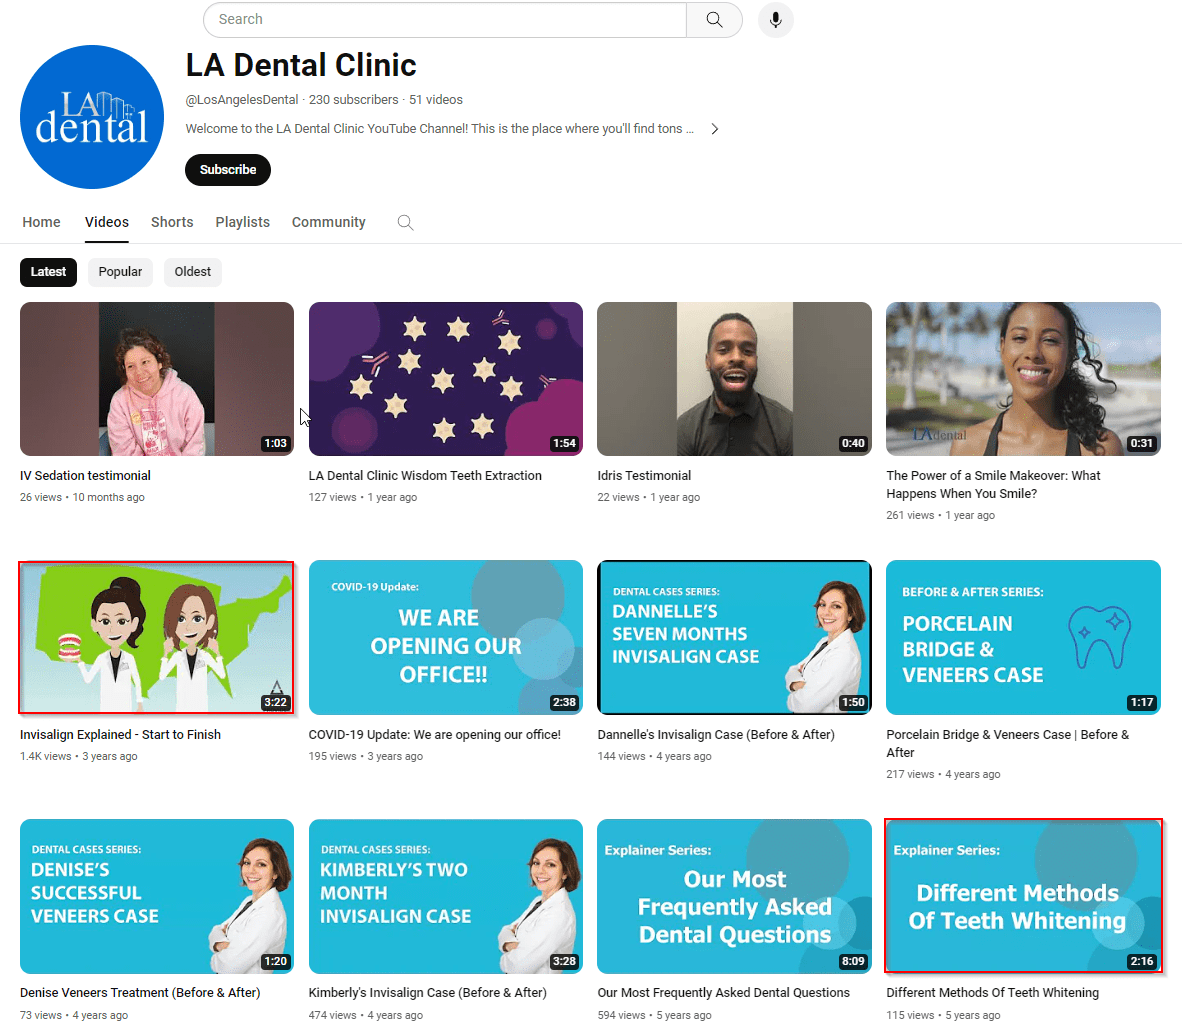 LA Dental Clinic's YouTube channel 